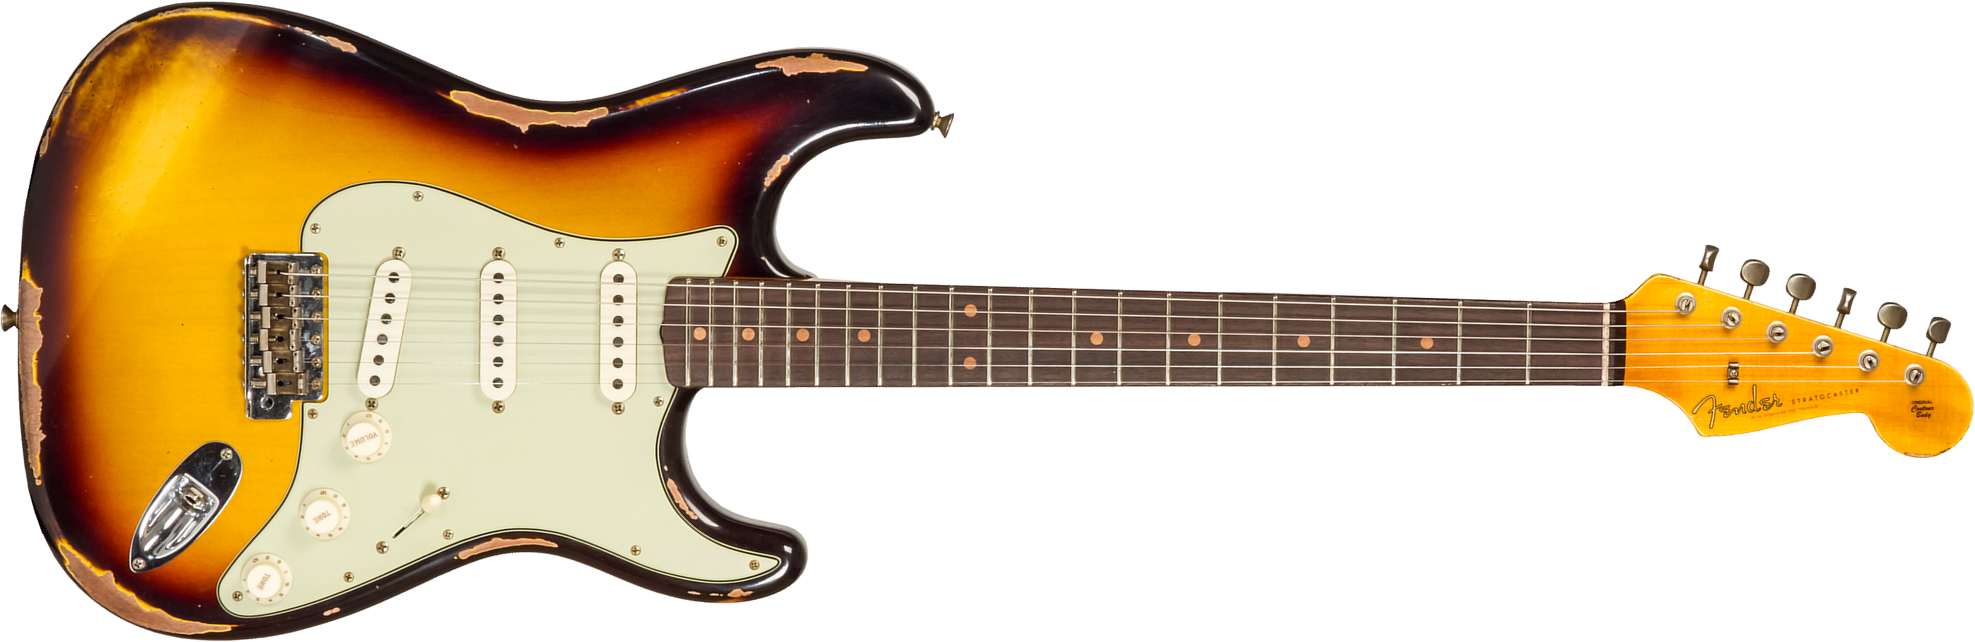 Fender Custom Shop Strat 1961 3s Trem Rw #cz573663 - Heavy Relic Aged 3-color Sunburst - Guitare Électrique Forme Str - Main picture